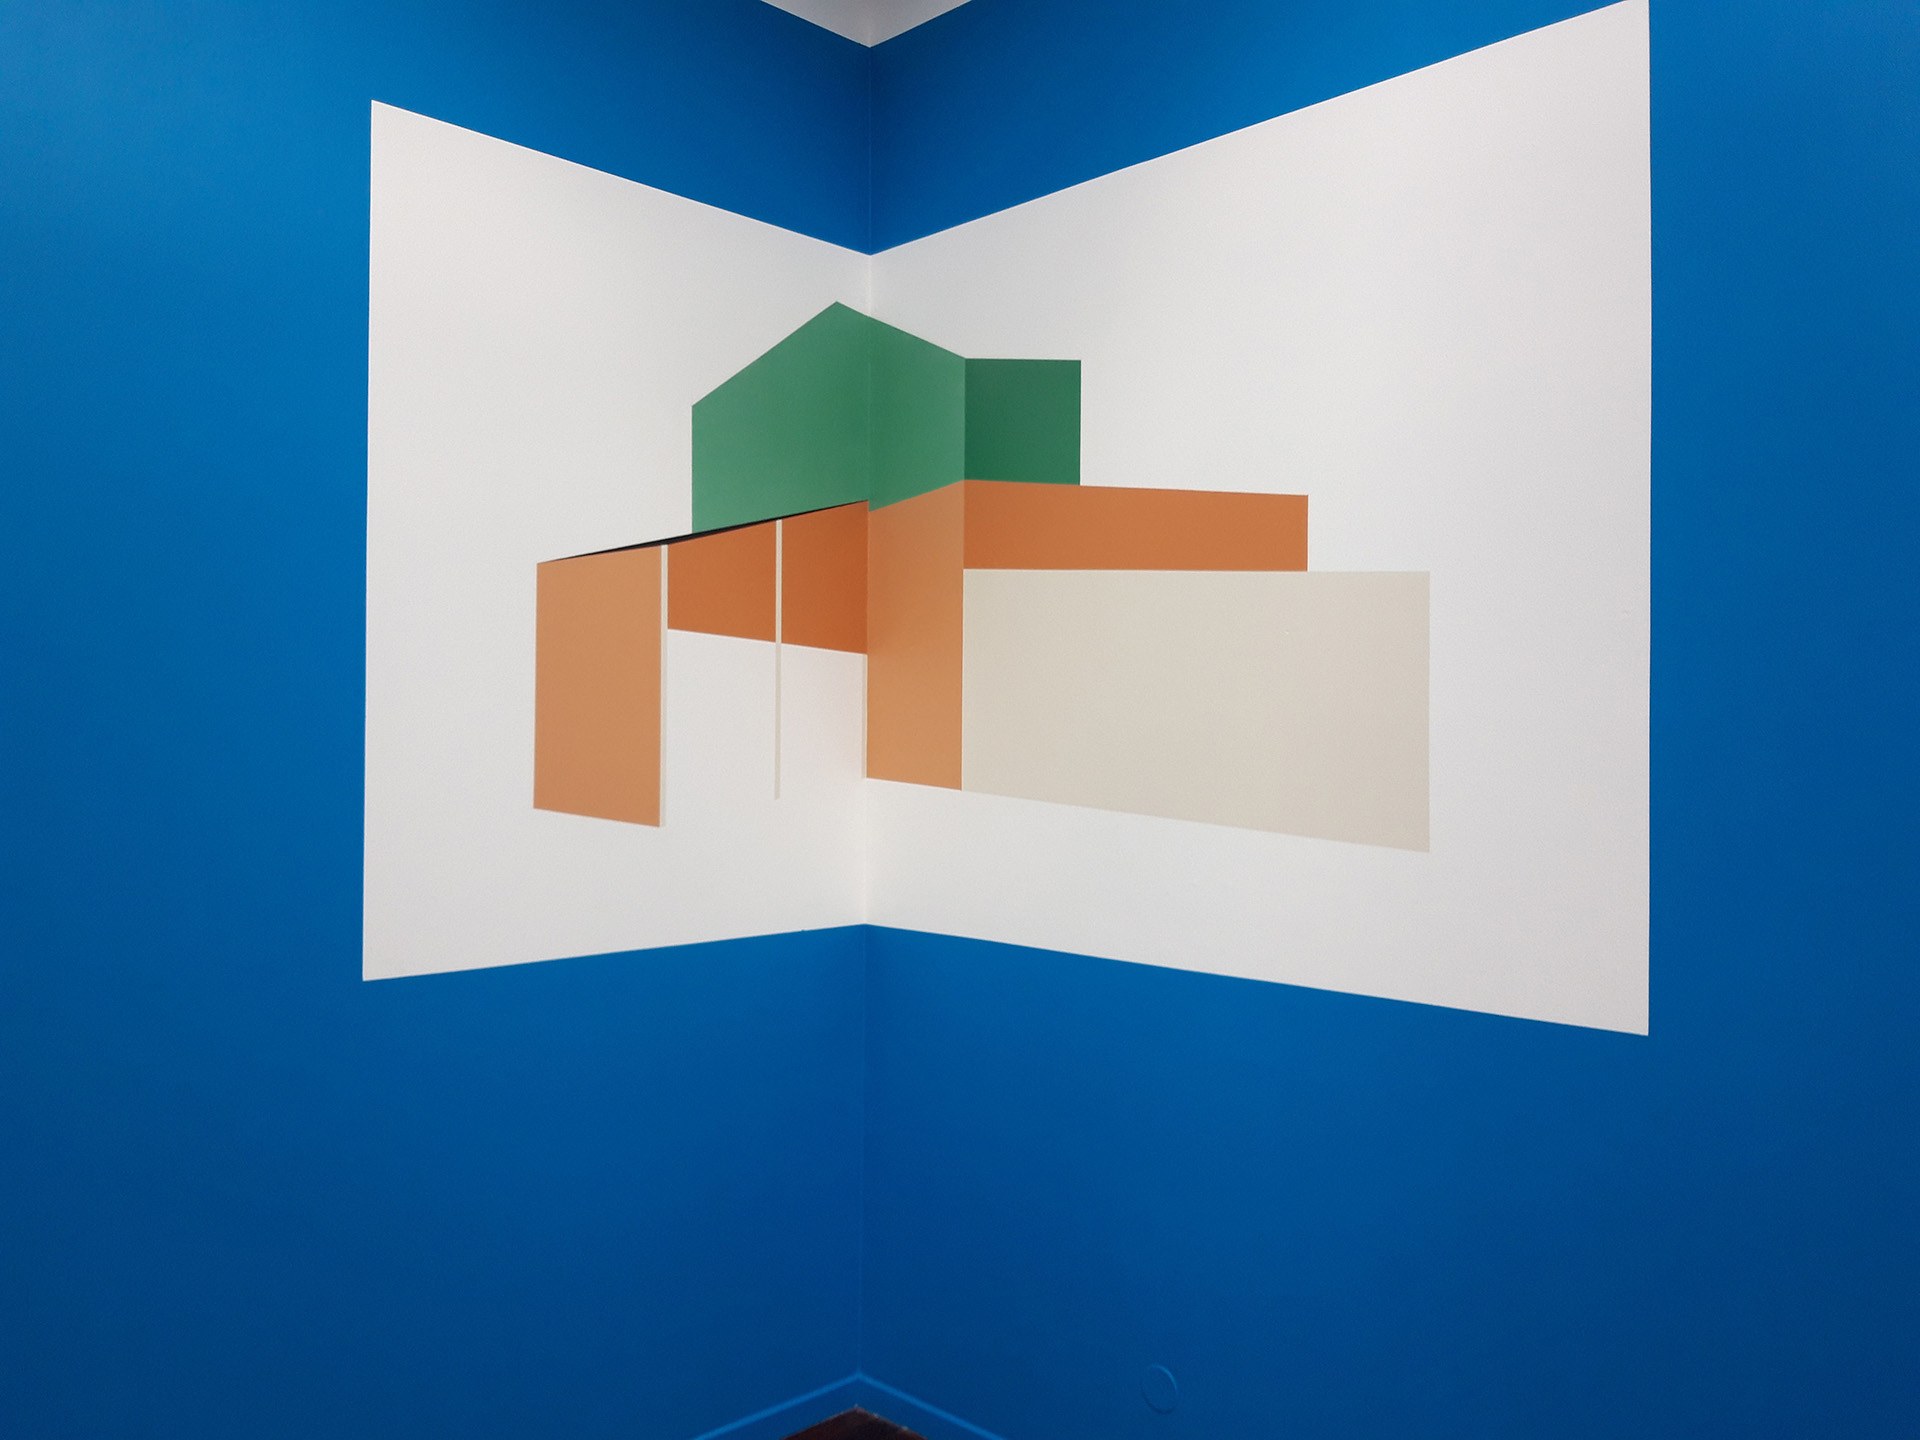 Elle représente notamment certains bâtiments l’ayant marquée, mais uniquement en utilisant des formes géométriques, comme dans cette œuvre, baptisée “Une histoire d'angles” Jeanne Tzaut, 2021, Exposition Apnée en récursivité.